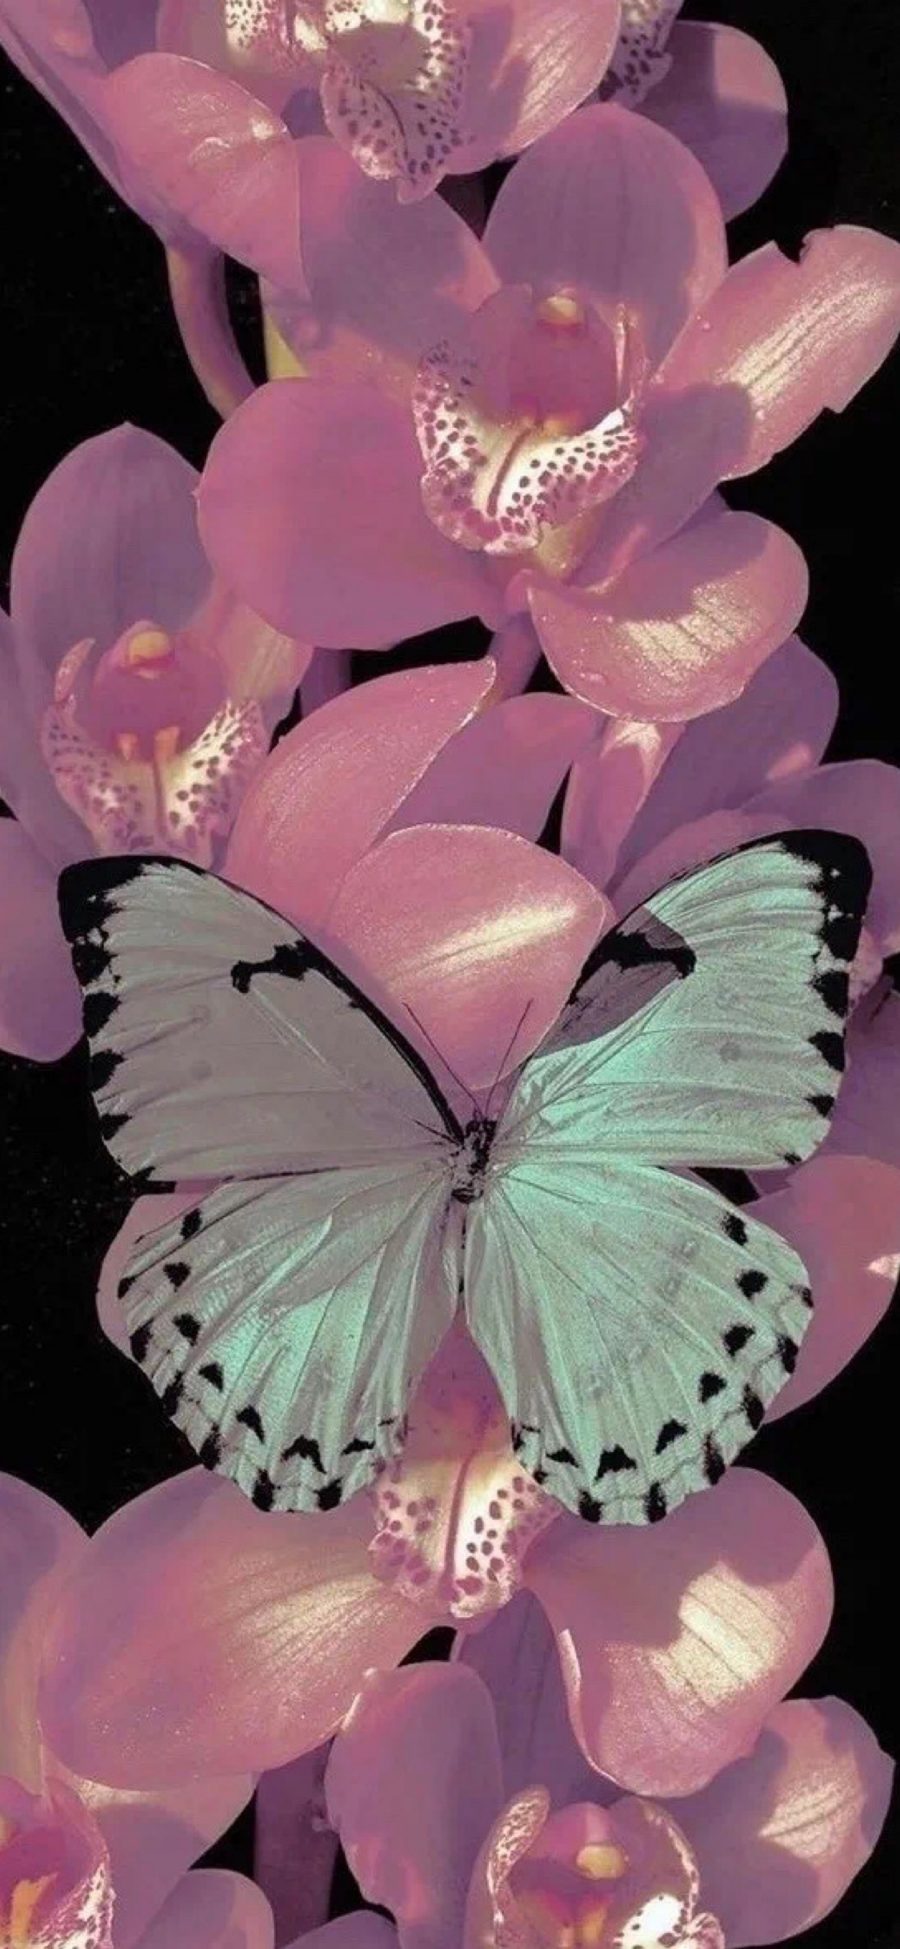 [2436×1125]插图 蝴蝶 花 元素 苹果手机动漫壁纸图片